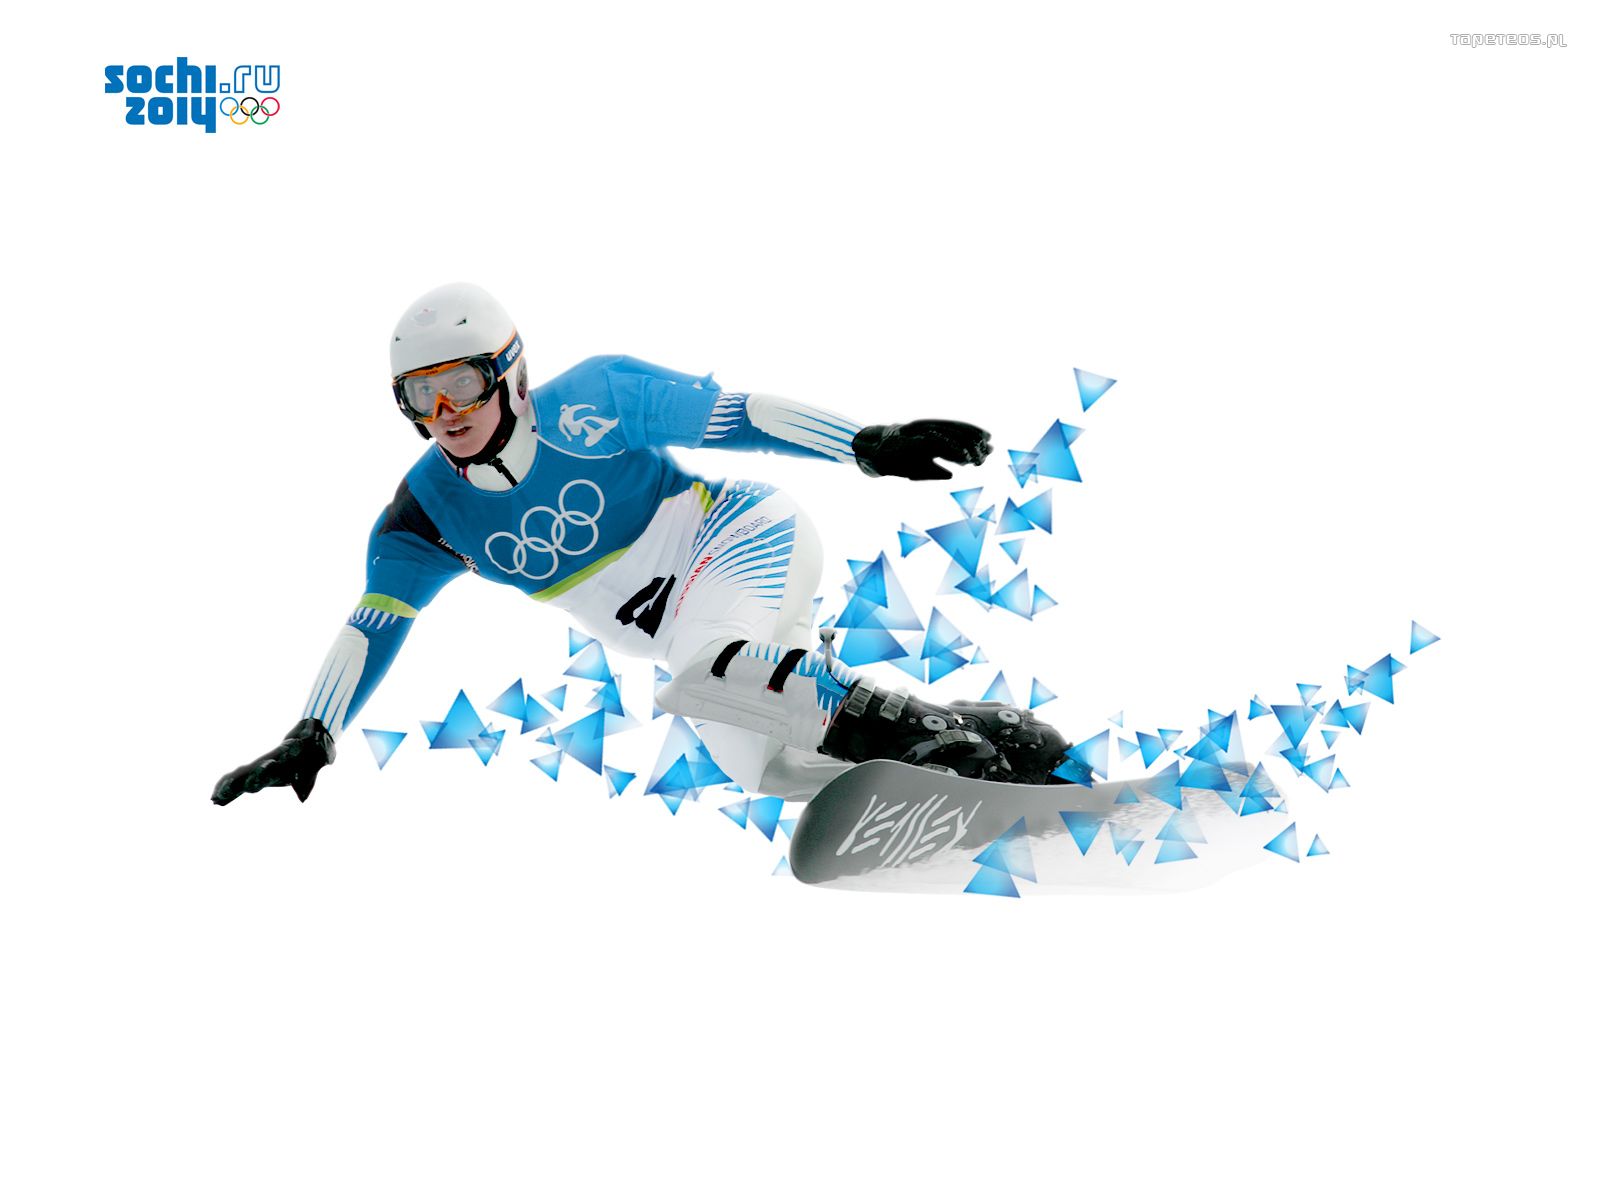 Soczi 2014 Zimowe Igrzyska Olimpijskie 003 Snowboard